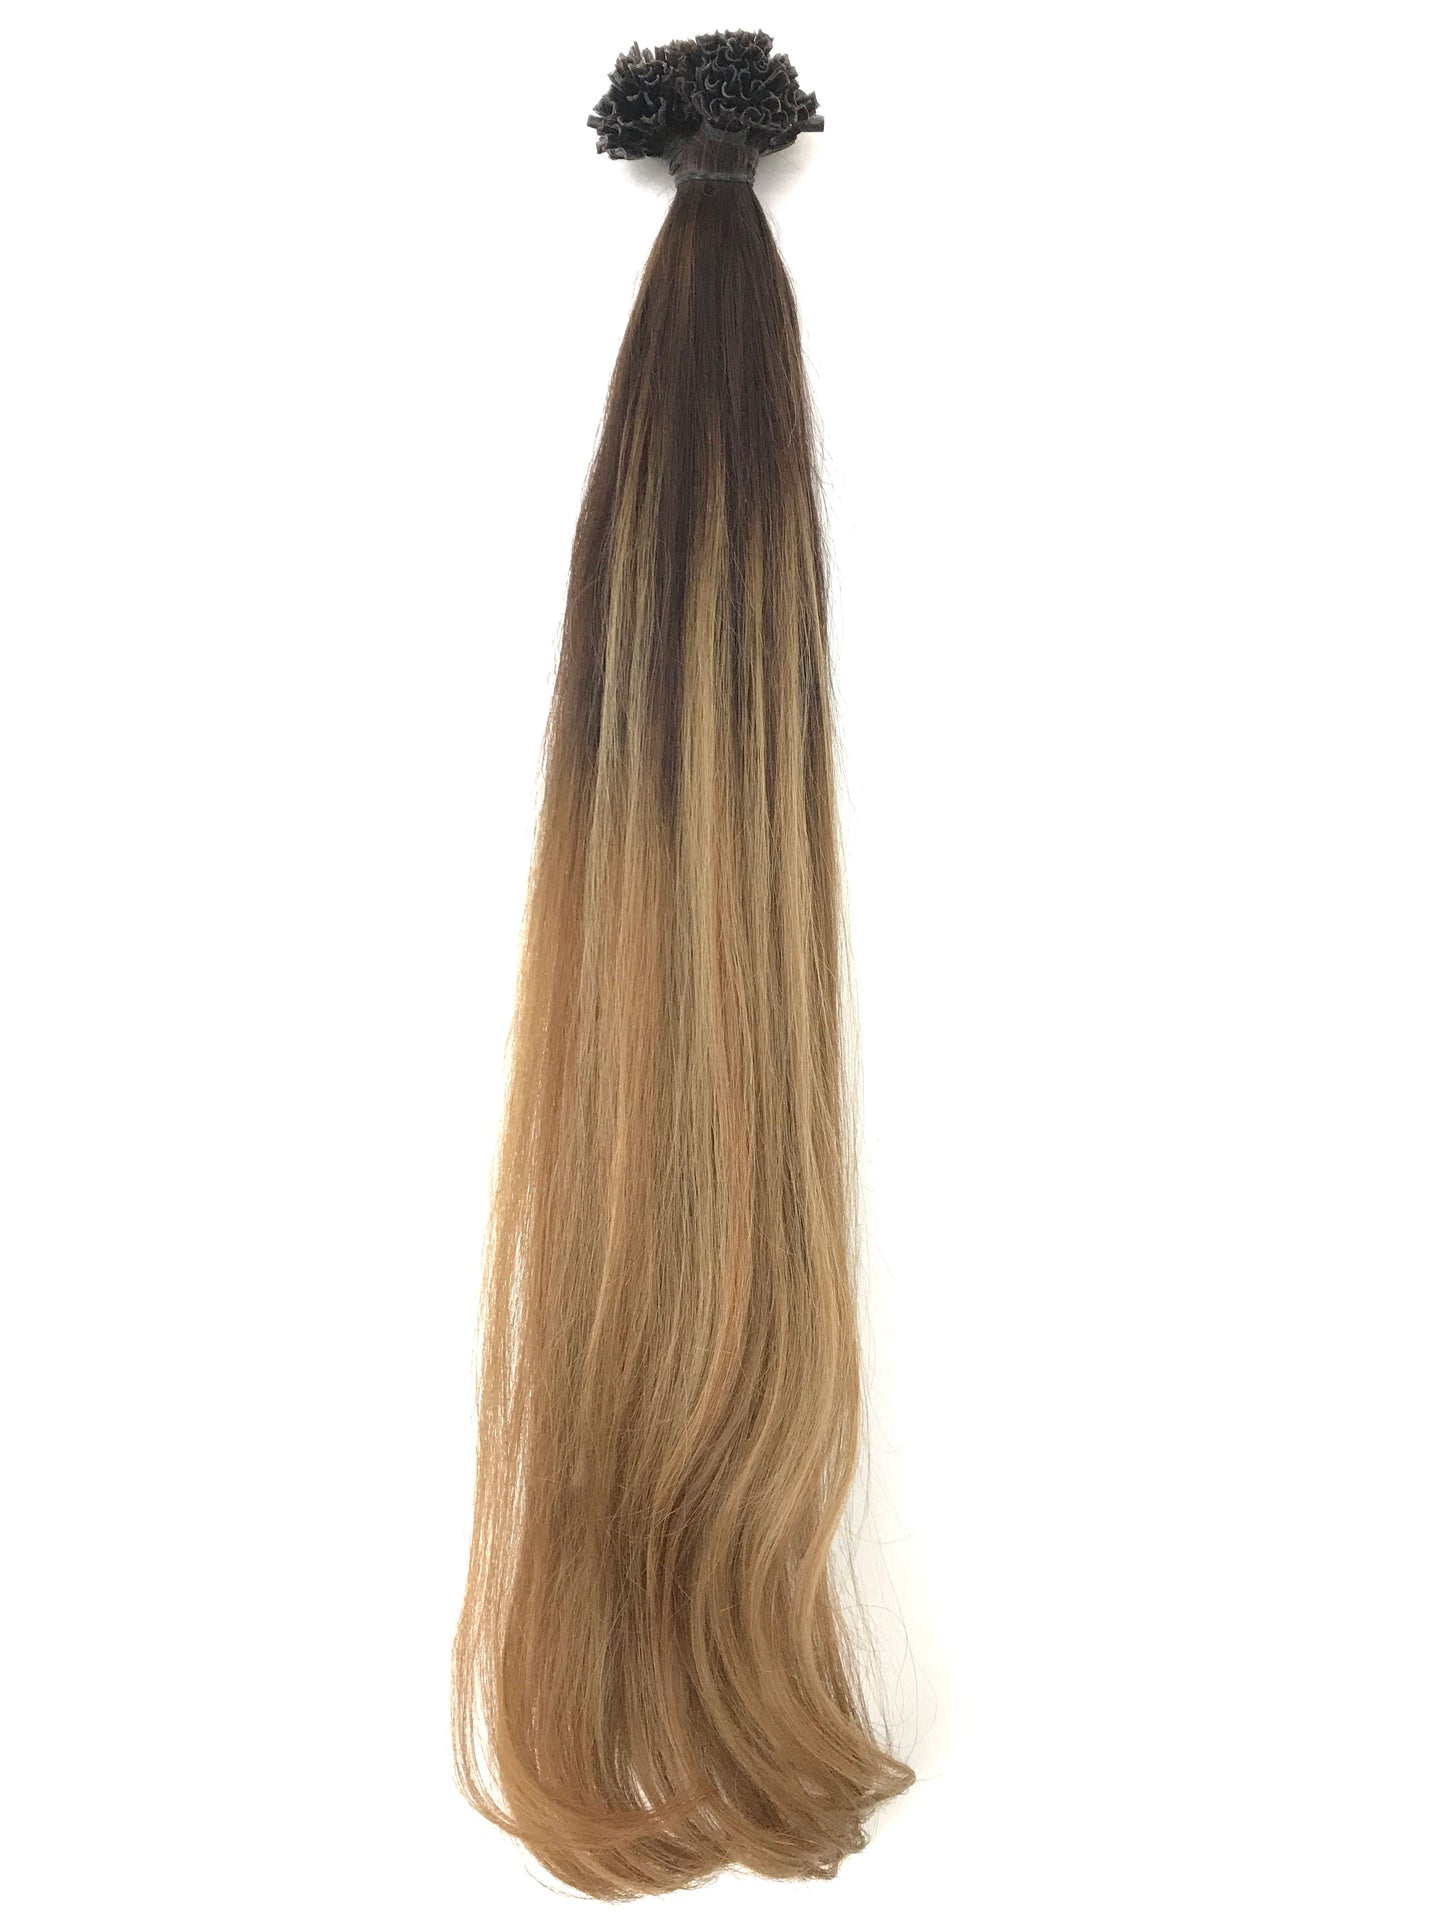 Extensions de cheveux ombrés à balayage européen - cheveux vierges et beauté, les meilleures extensions de cheveux, de vrais cheveux humains vierges.